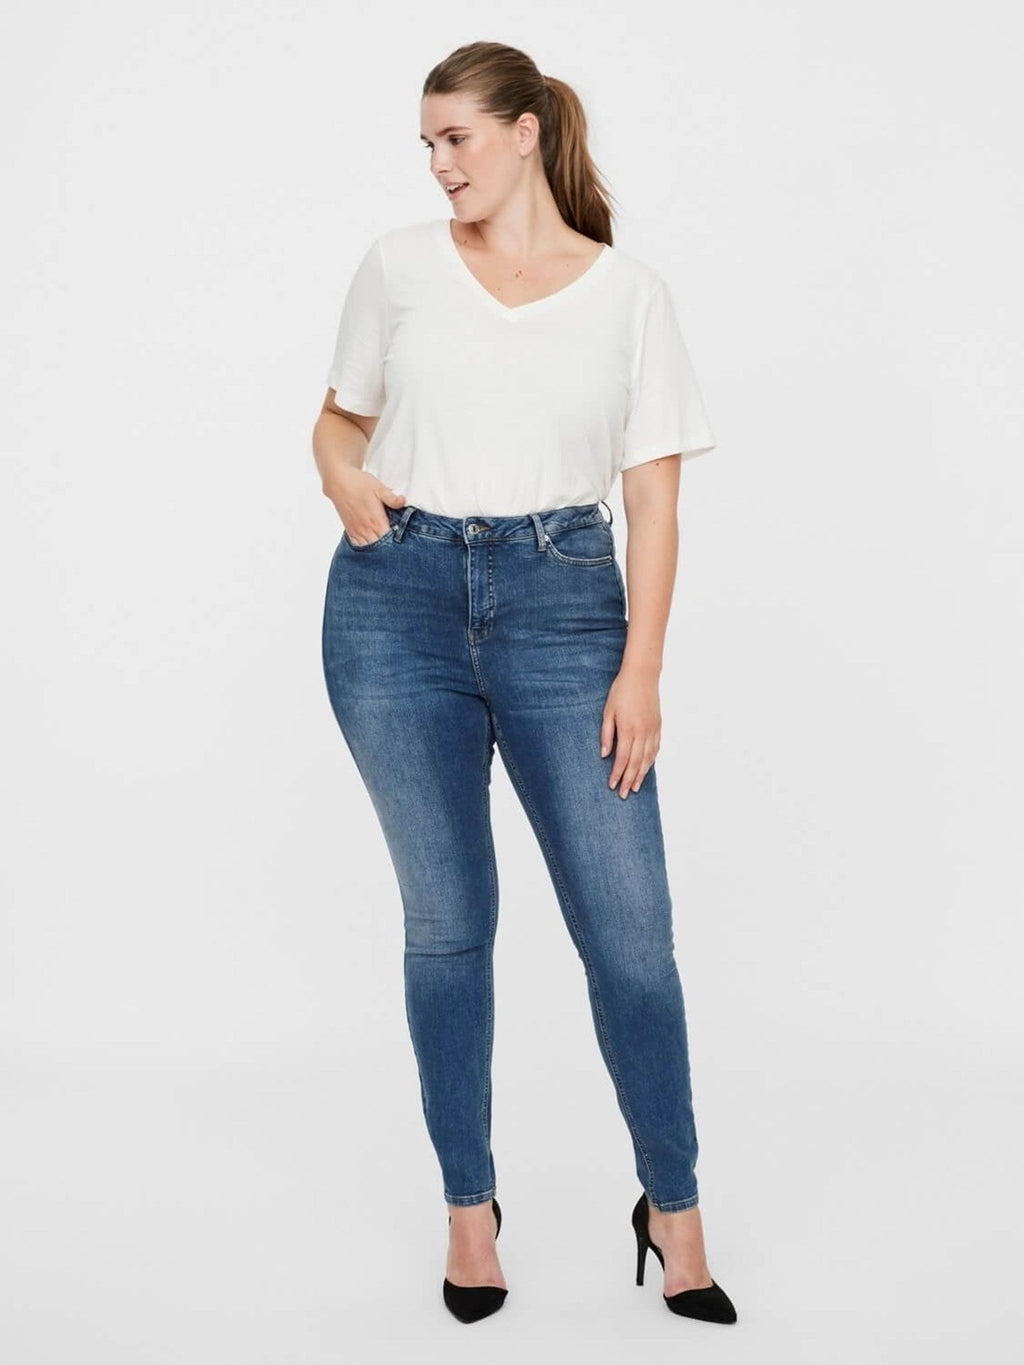 Lora Jeans à haute taille (courbe) - Denim bleu moyen